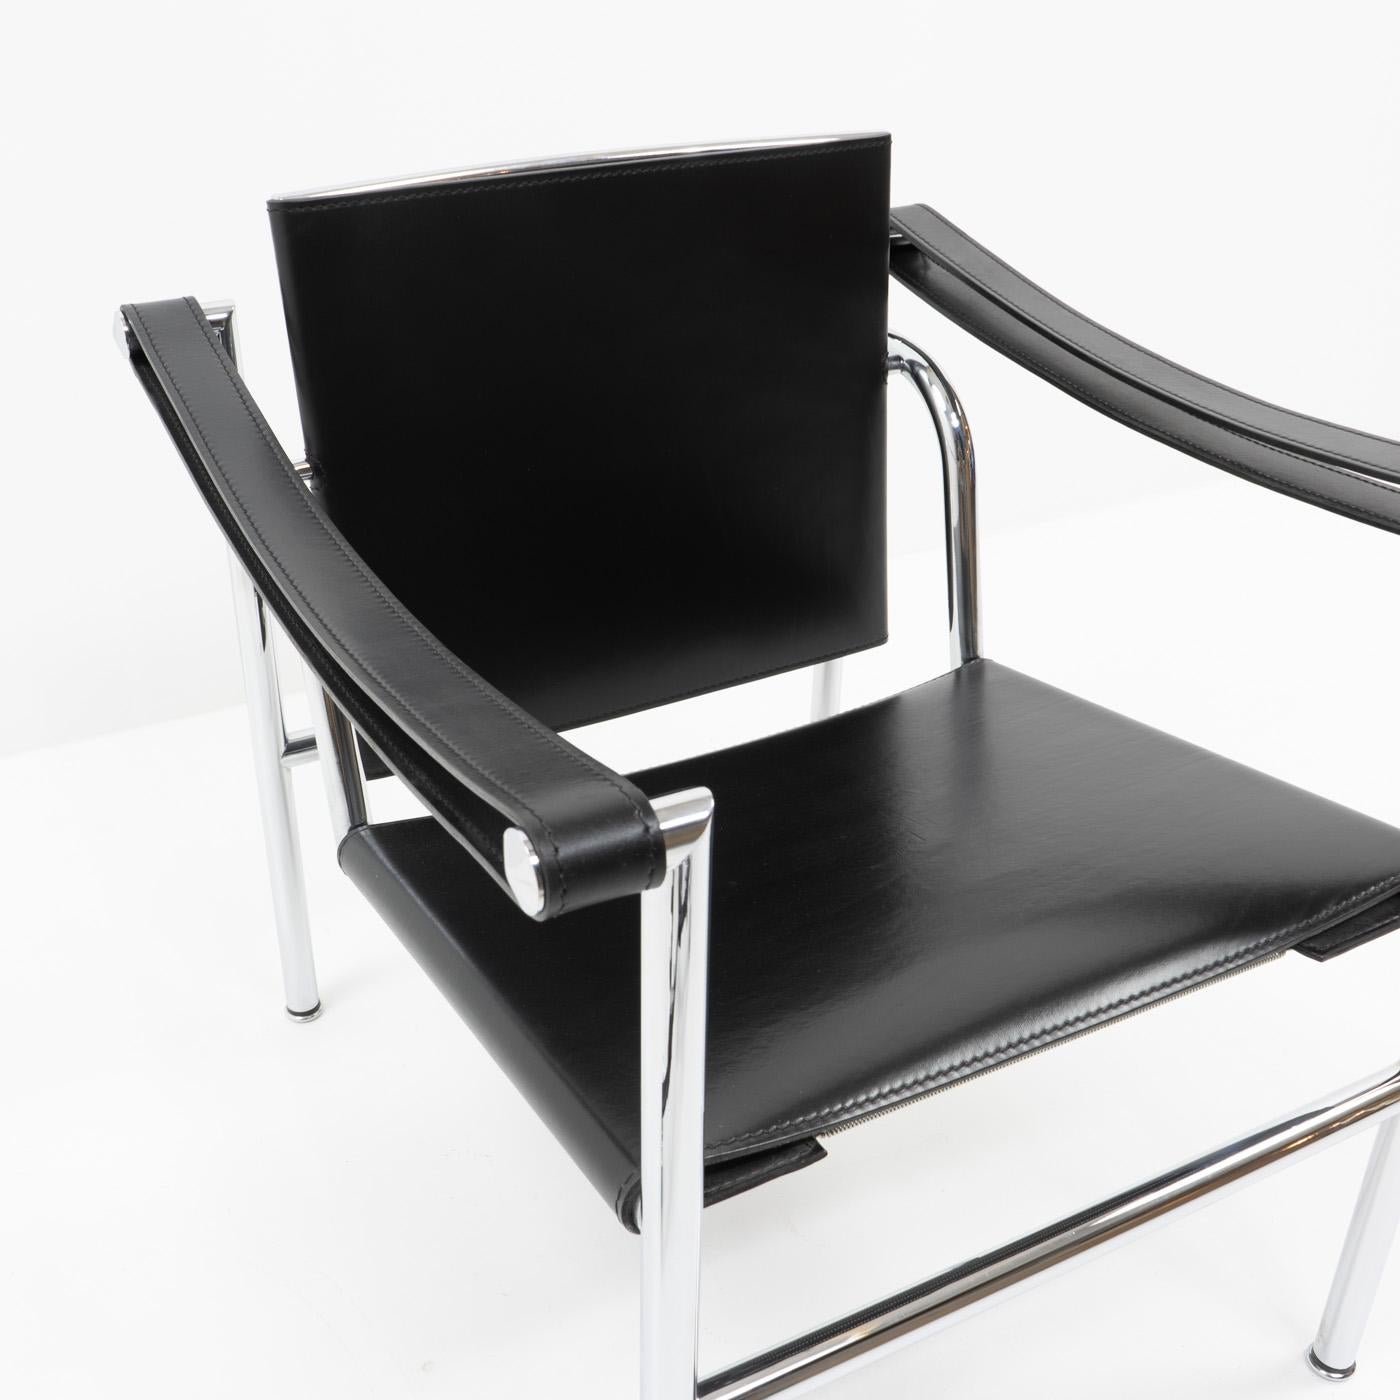 Fin du 20e siècle Chaise LC1 de Le Corbusier, Pierre Jeanneret, Charlotte Perriand pour Cassina